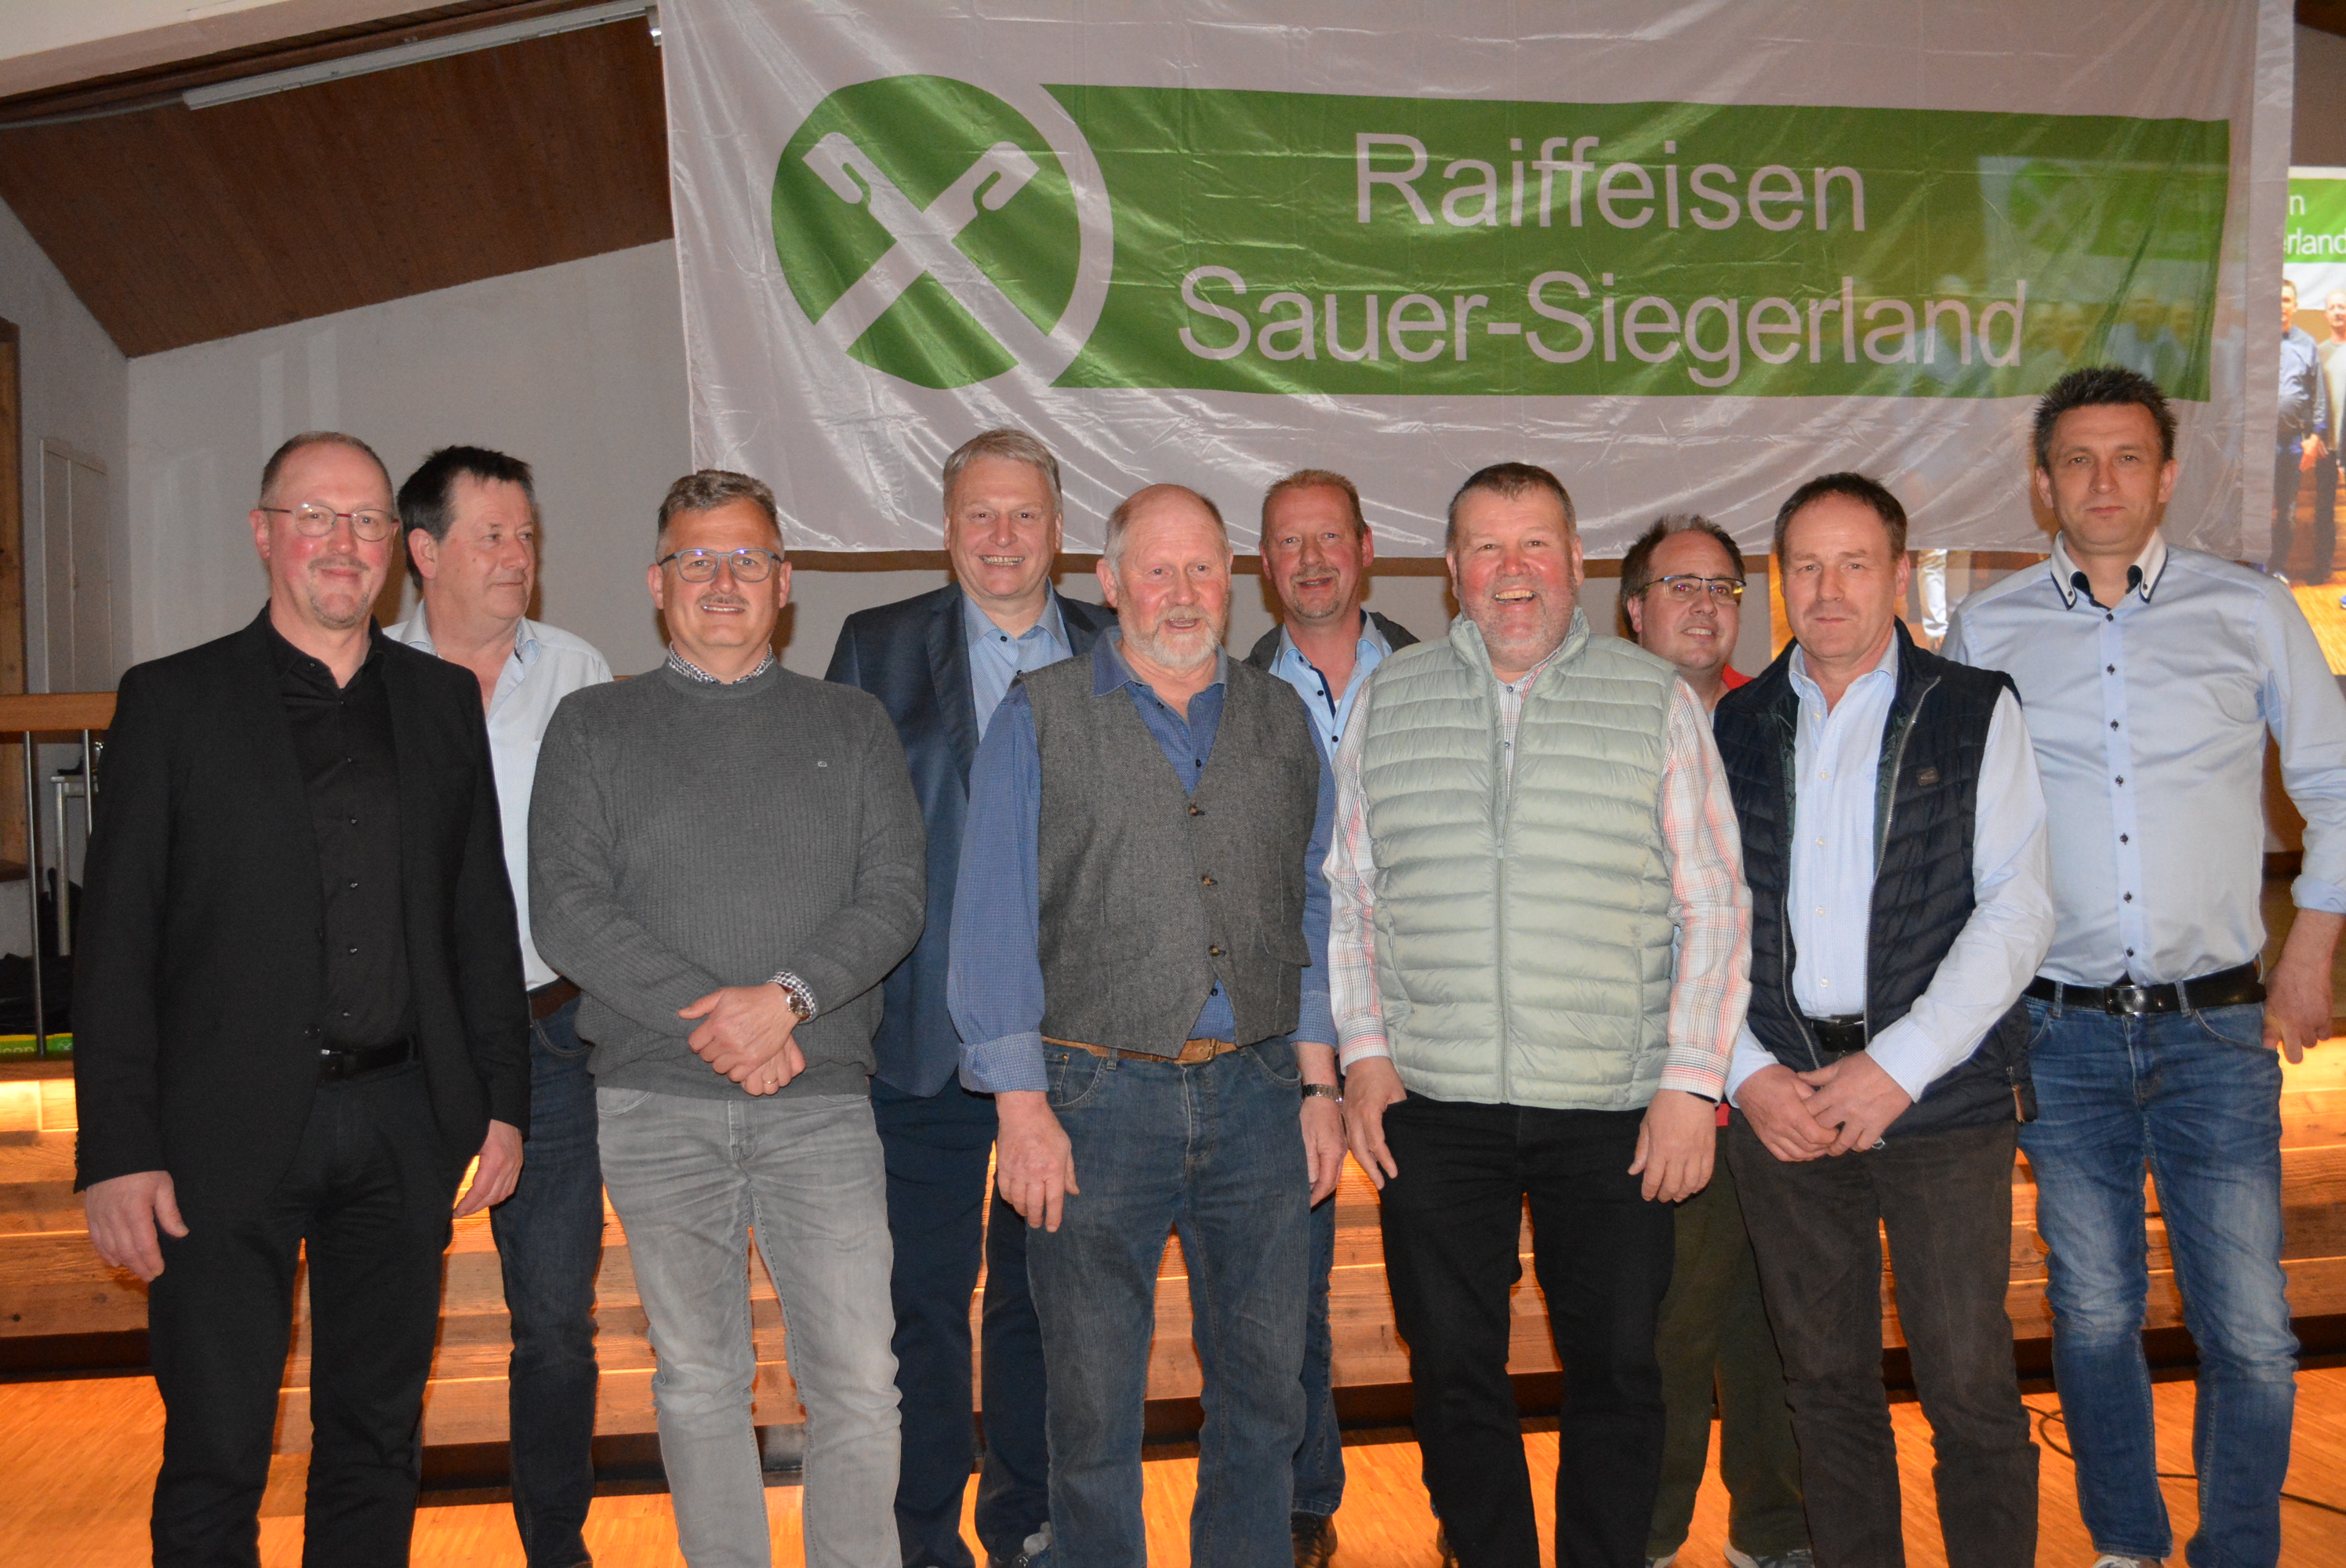 Raiffeisen Sauer-Siegerland